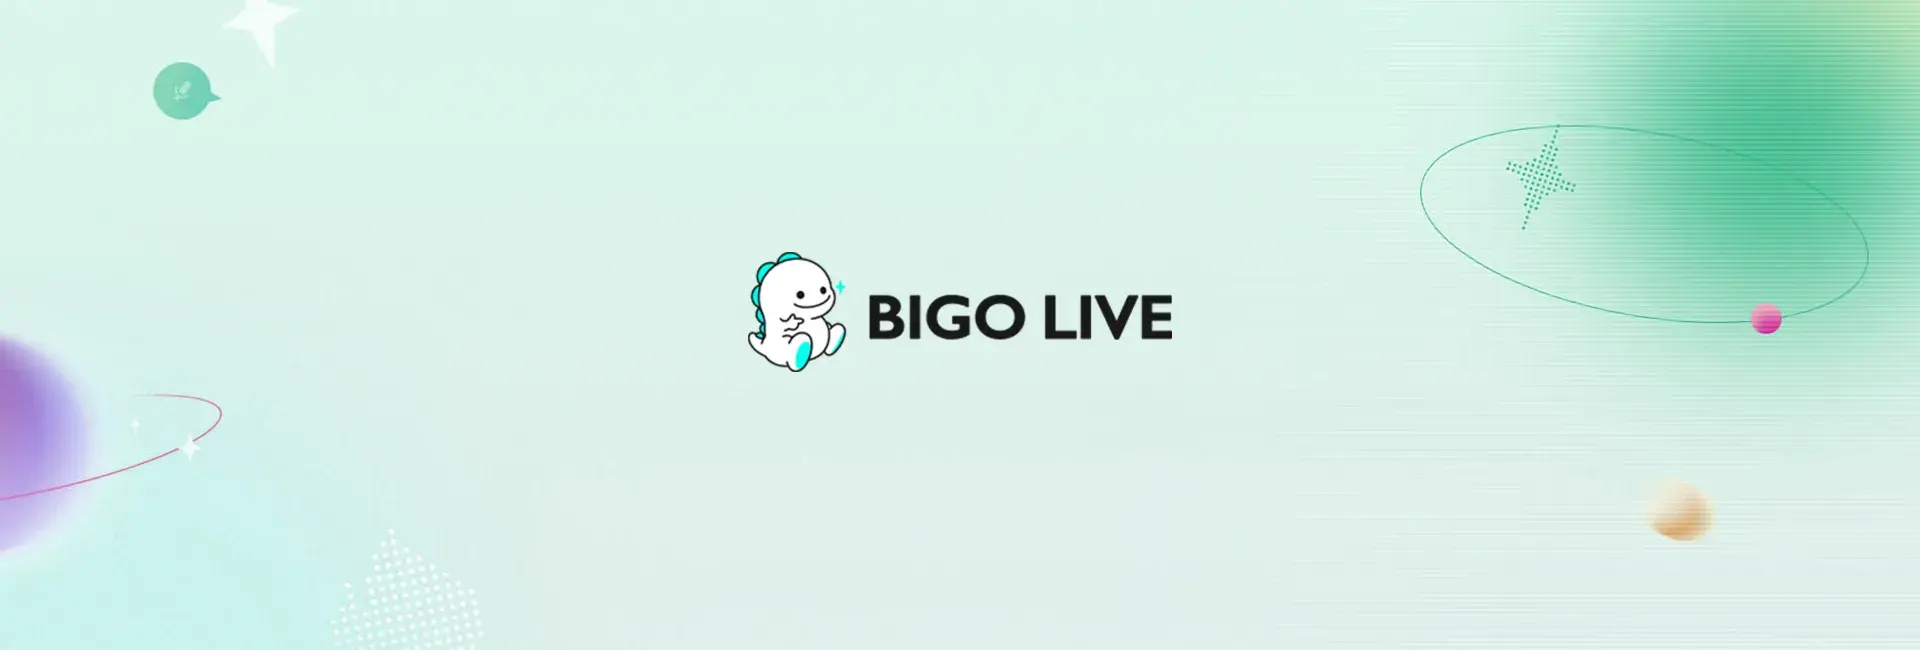 Bigo Live - 47500 Diamonds (Global)	